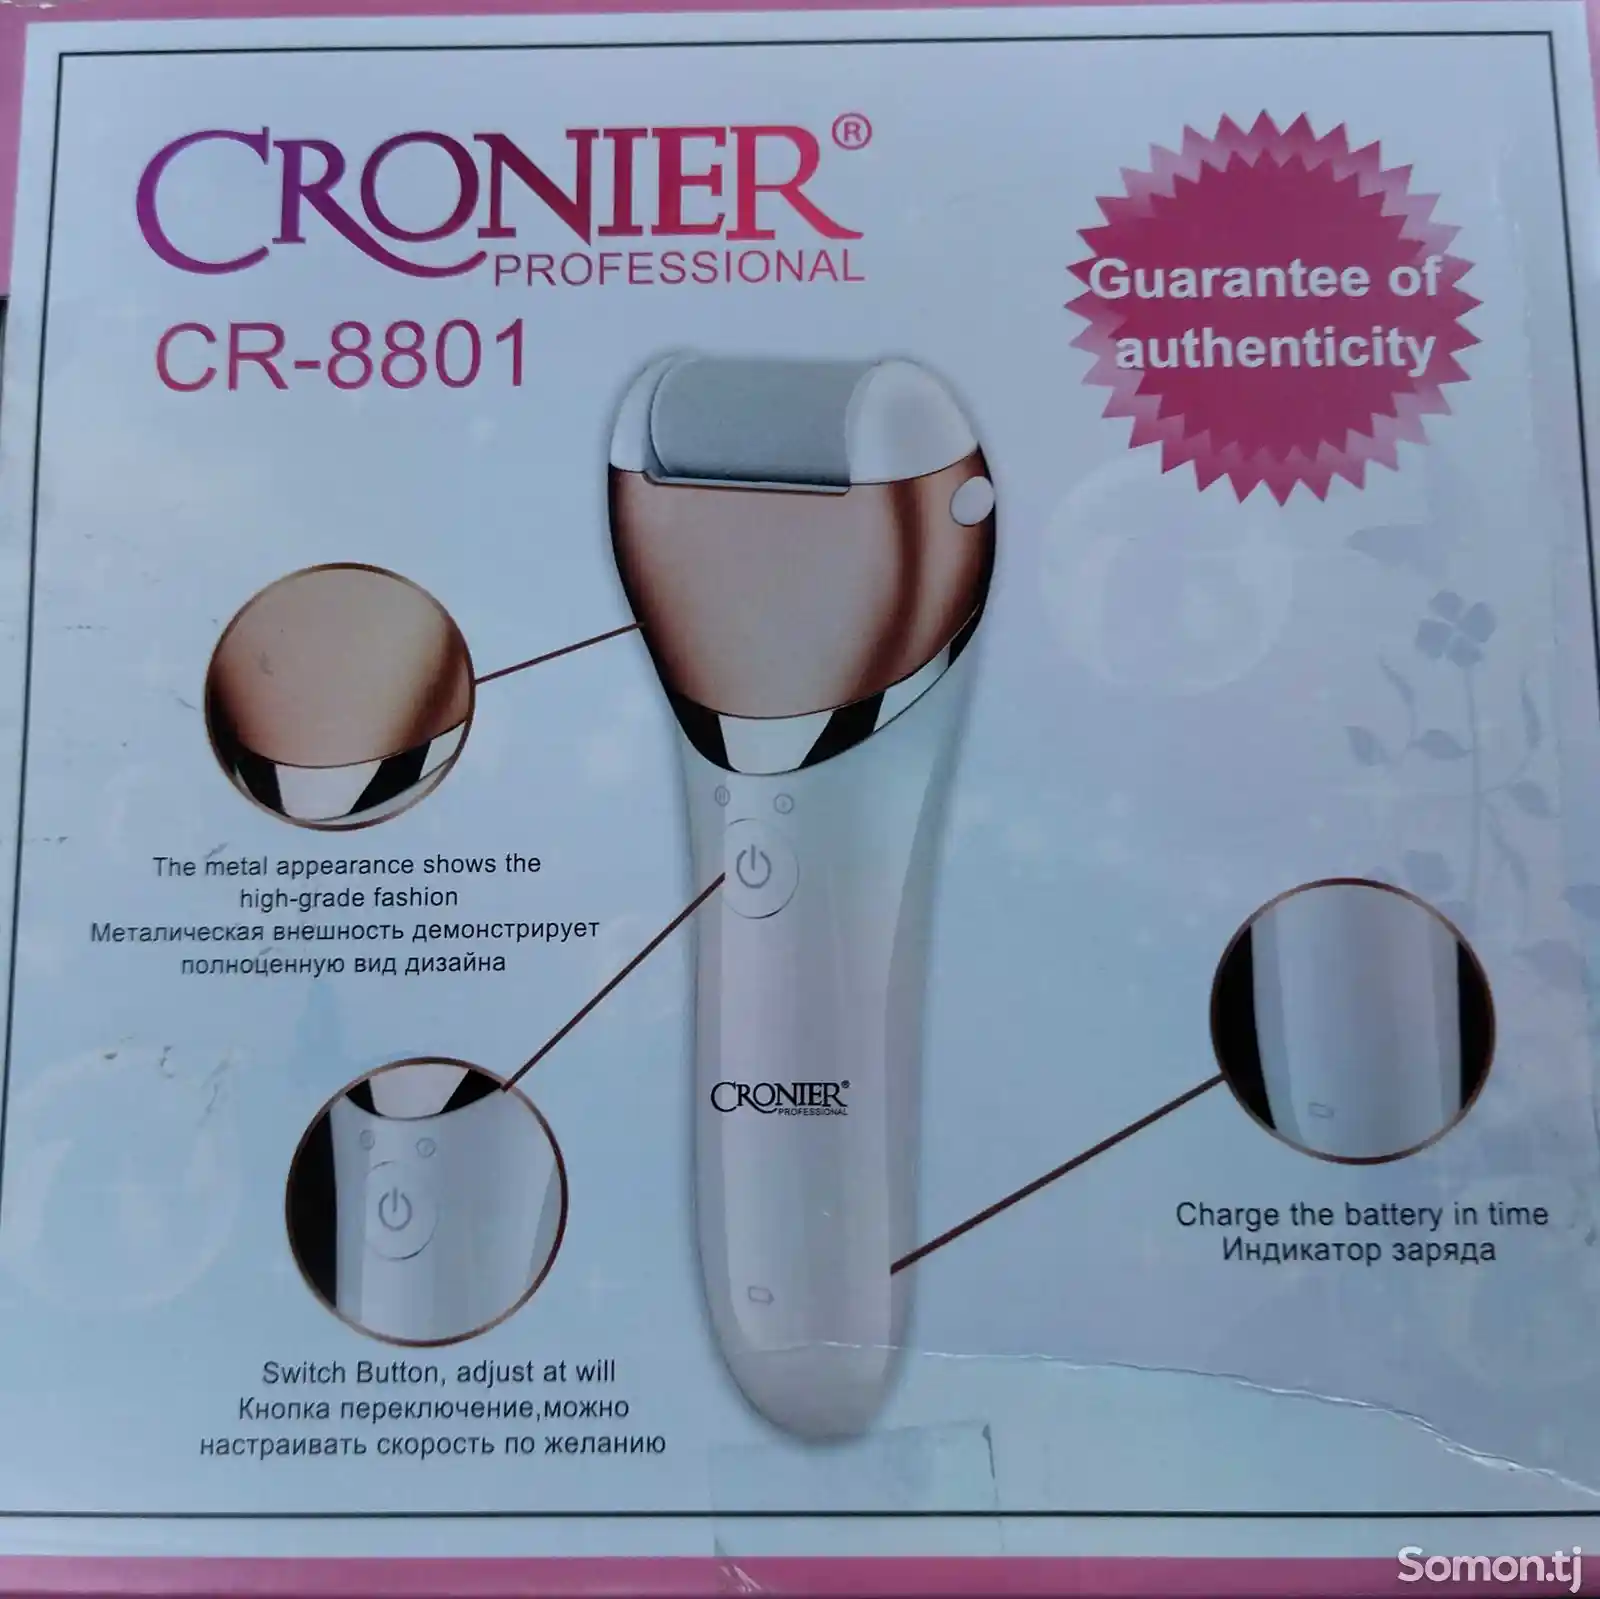 Депилятор Cronier CR-8801